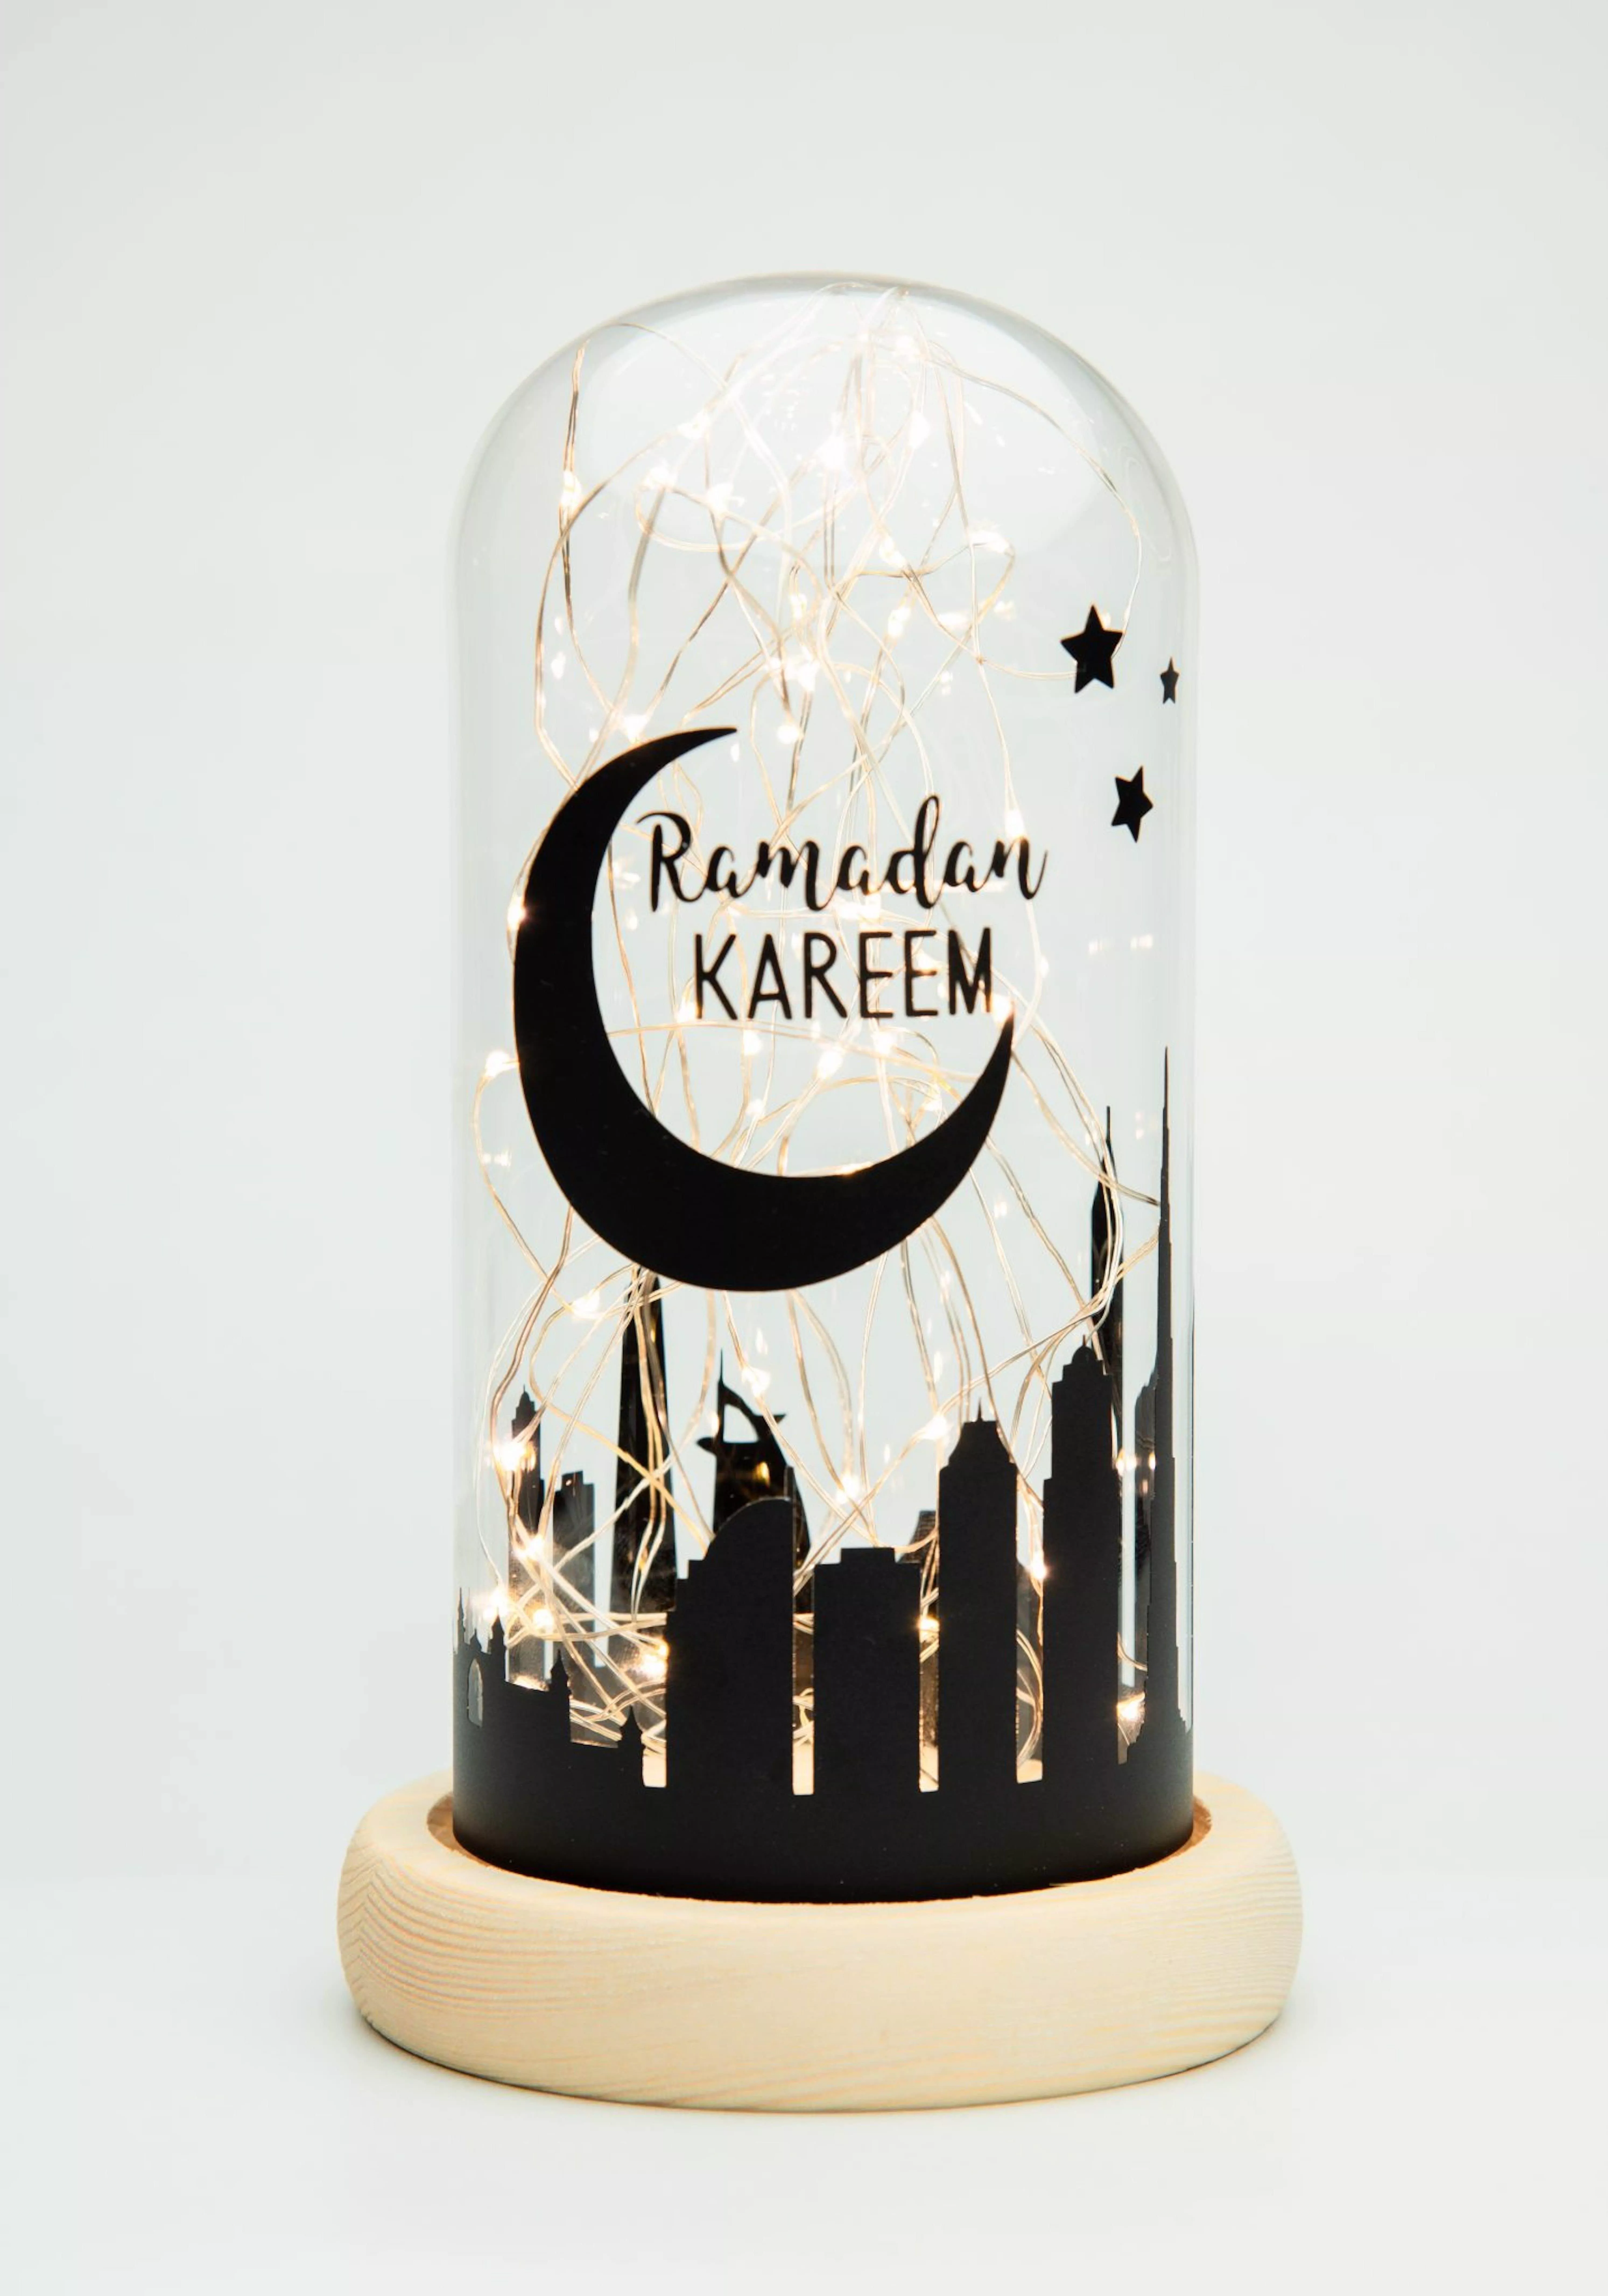 ديكور رمضان 2020: نصائح وأفكار لتزيين المنزل وإضافة لمسة شرقية مميّزة إليه